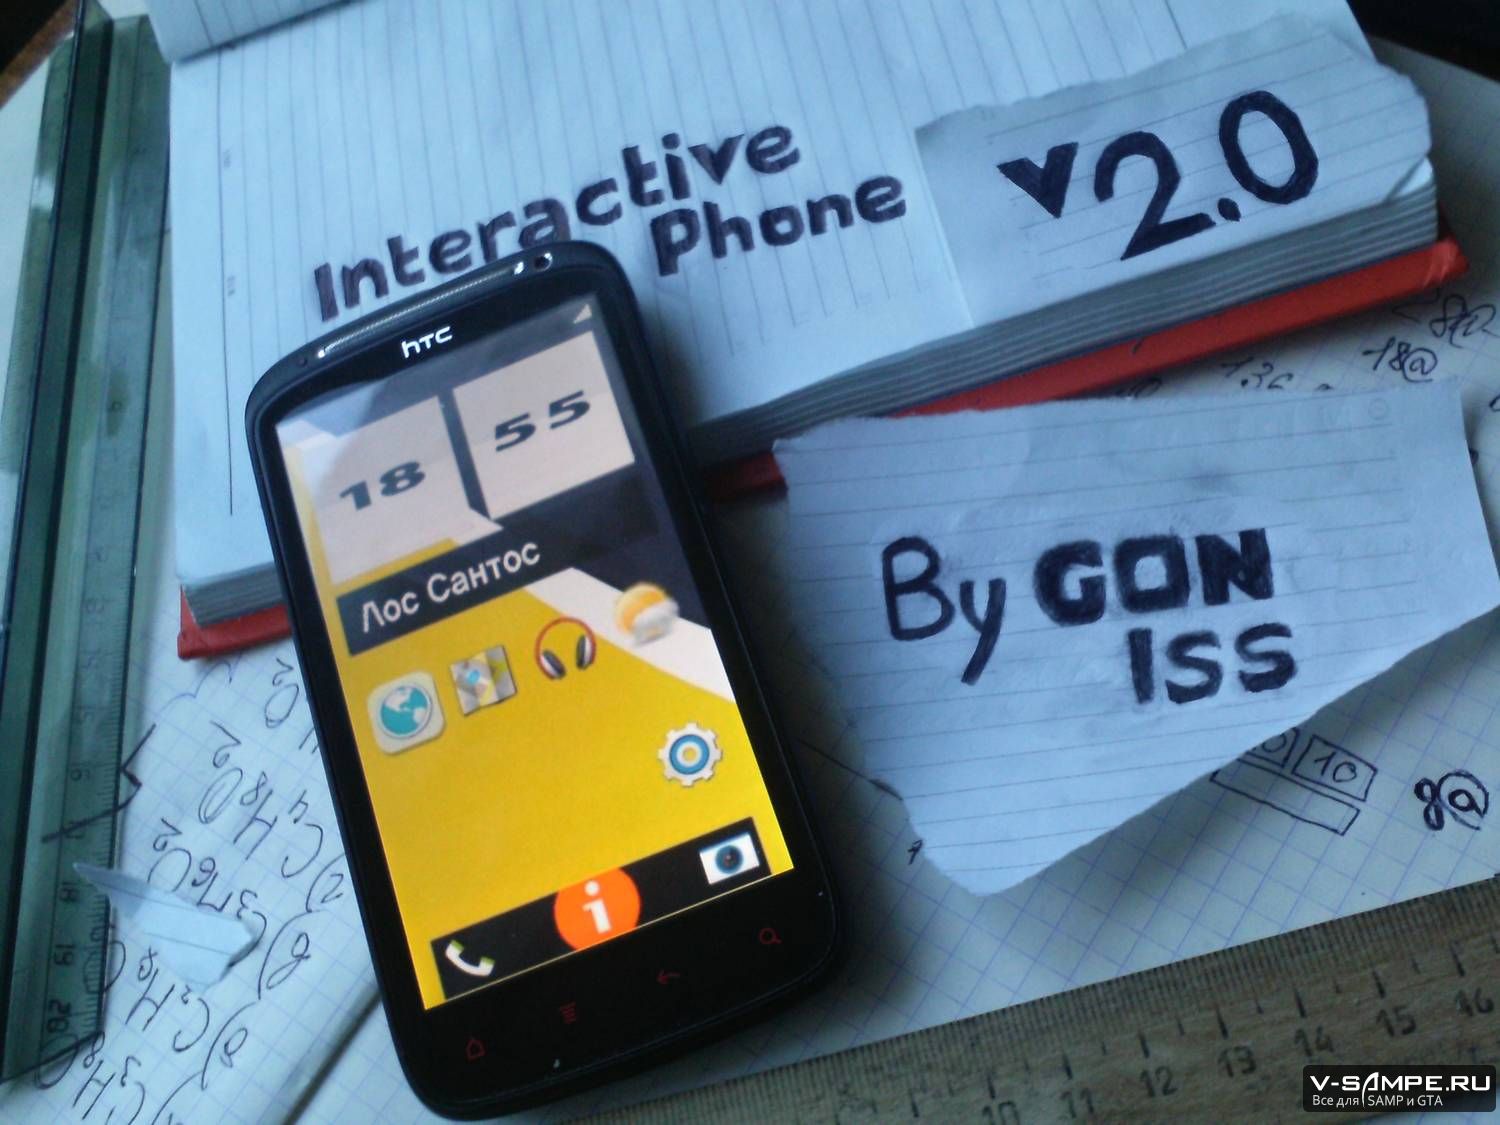 Интерактивный Телефон V2.0 от Gon_Iss